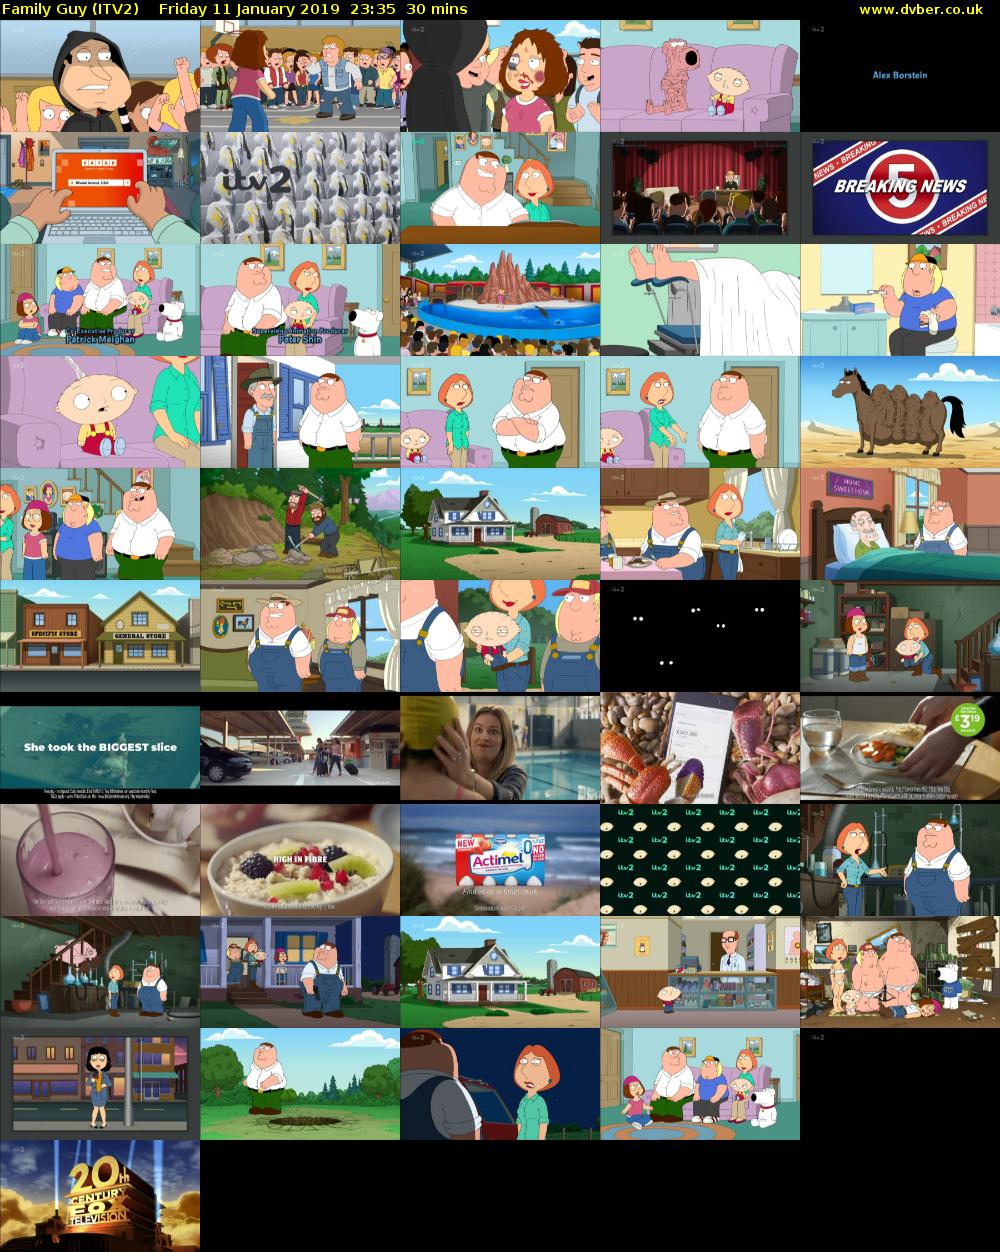 Family Guy (ITV2) Friday 11 January 2019 23:35 - 00:05